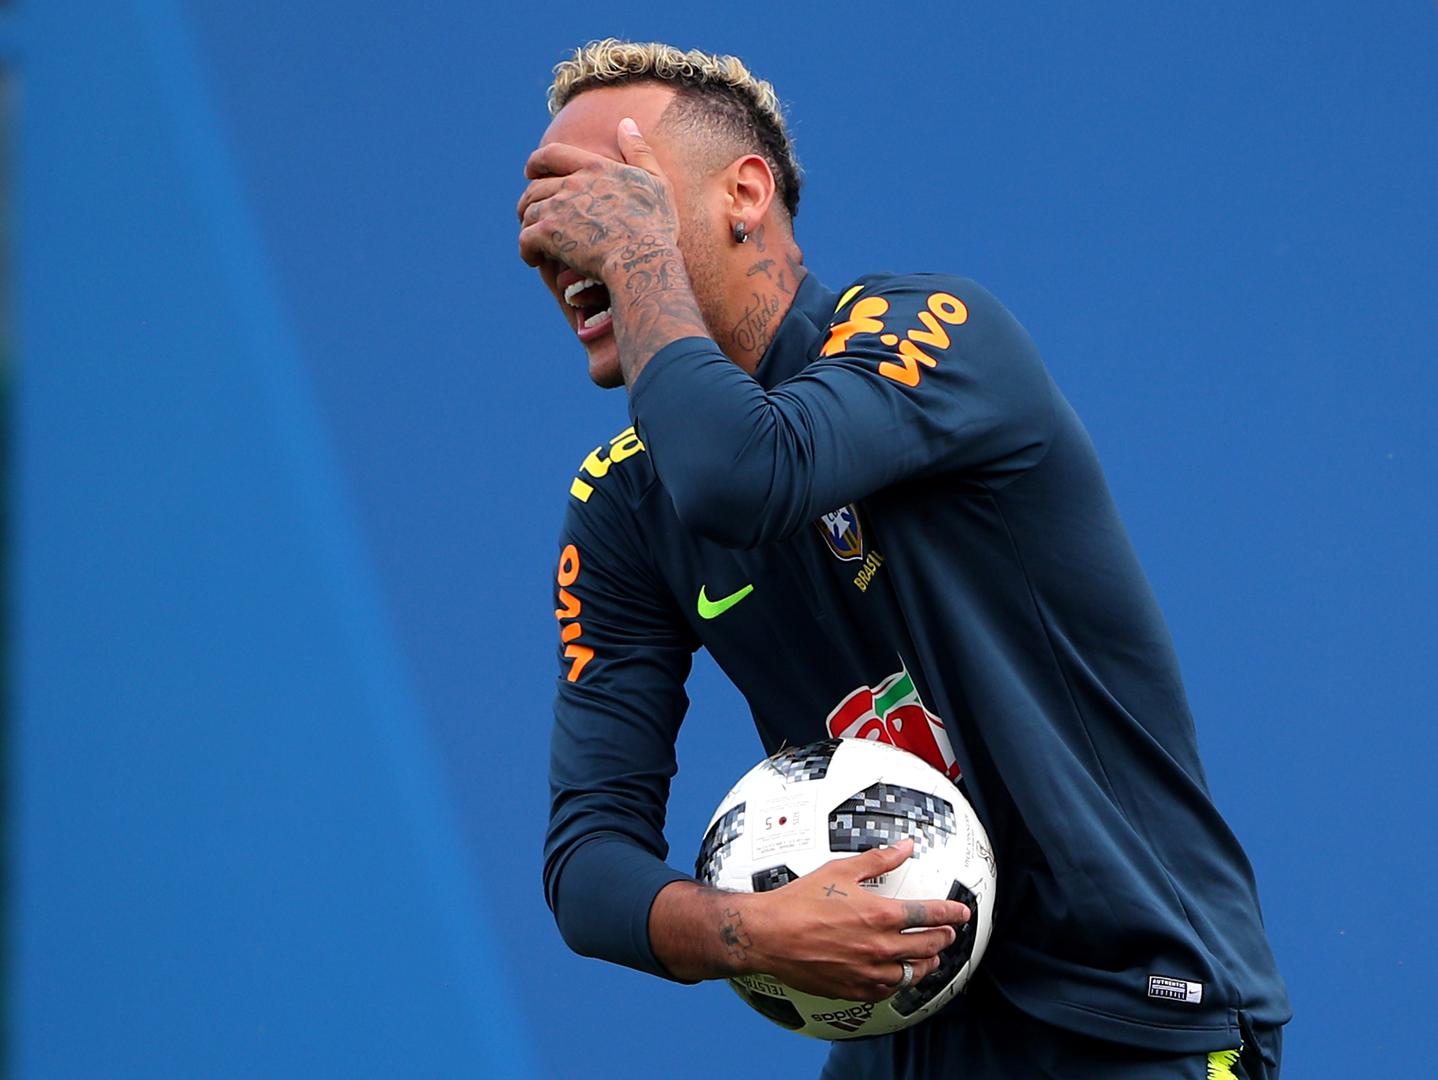 Nakon samo 15 minuta trening je mora napustiti Neymar.

